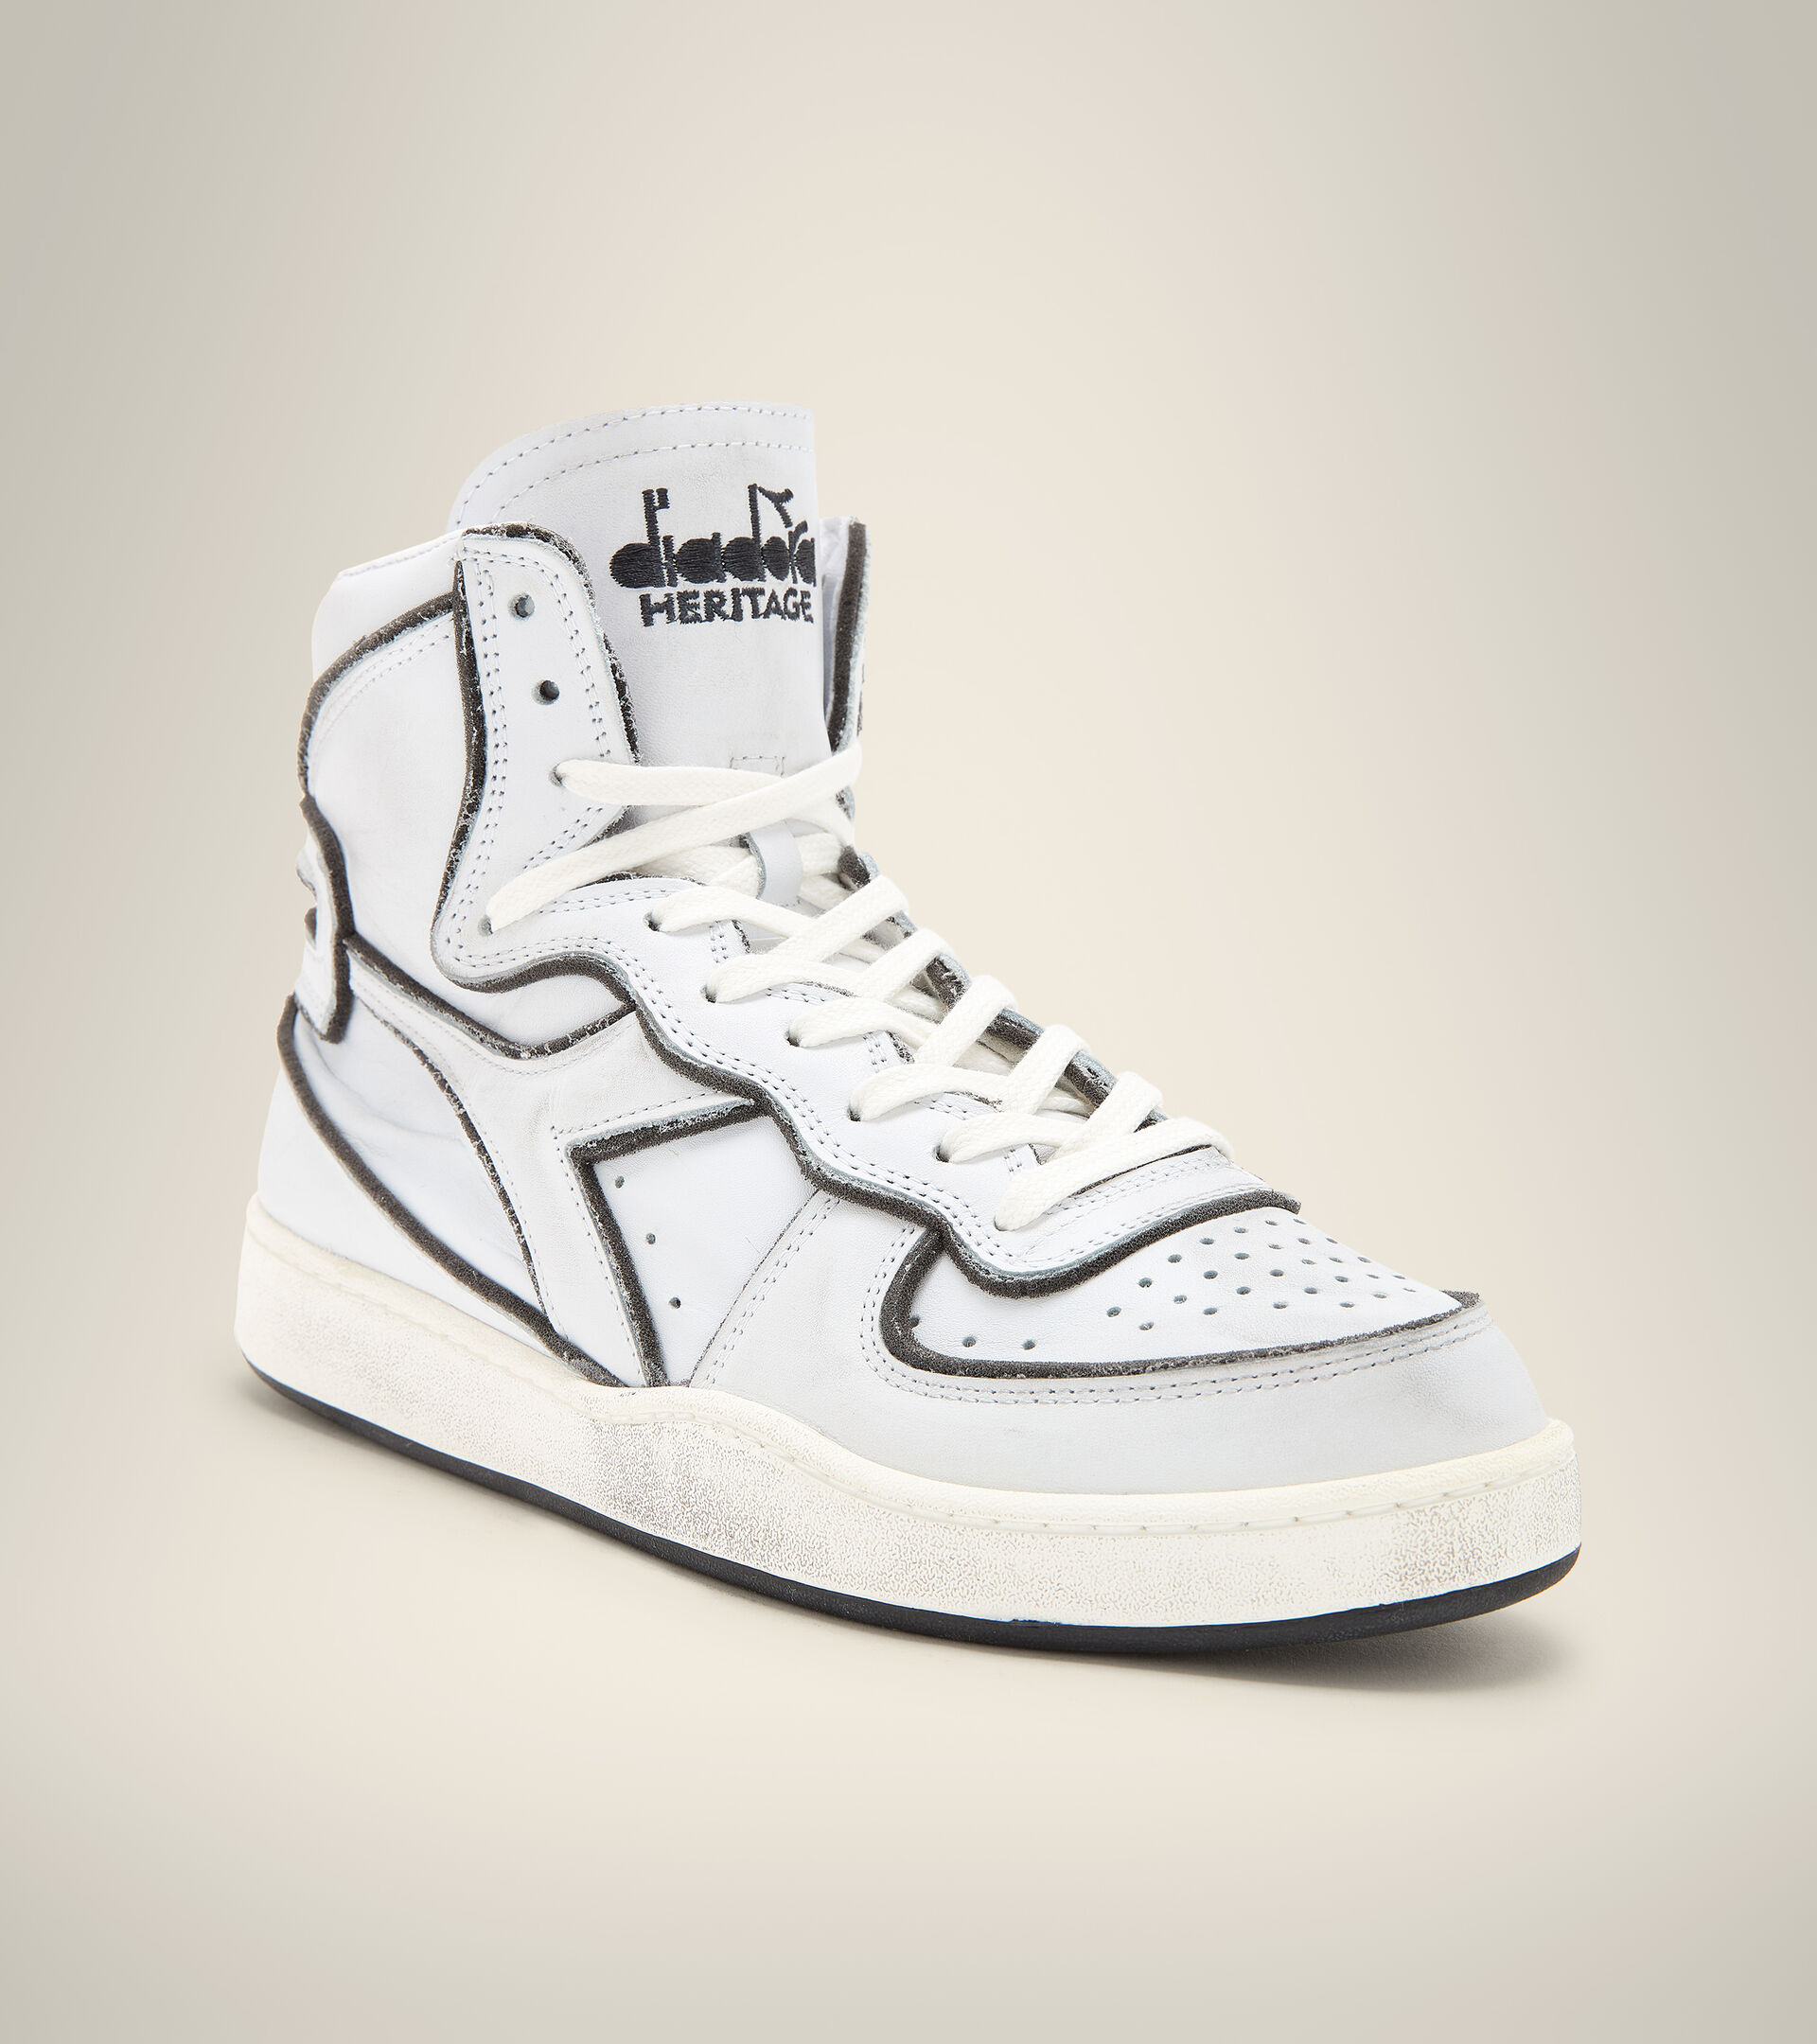 Heritage shoes - Unisex MI BASKET FRAME USED WHITE/WHITE/BLACK - Diadora